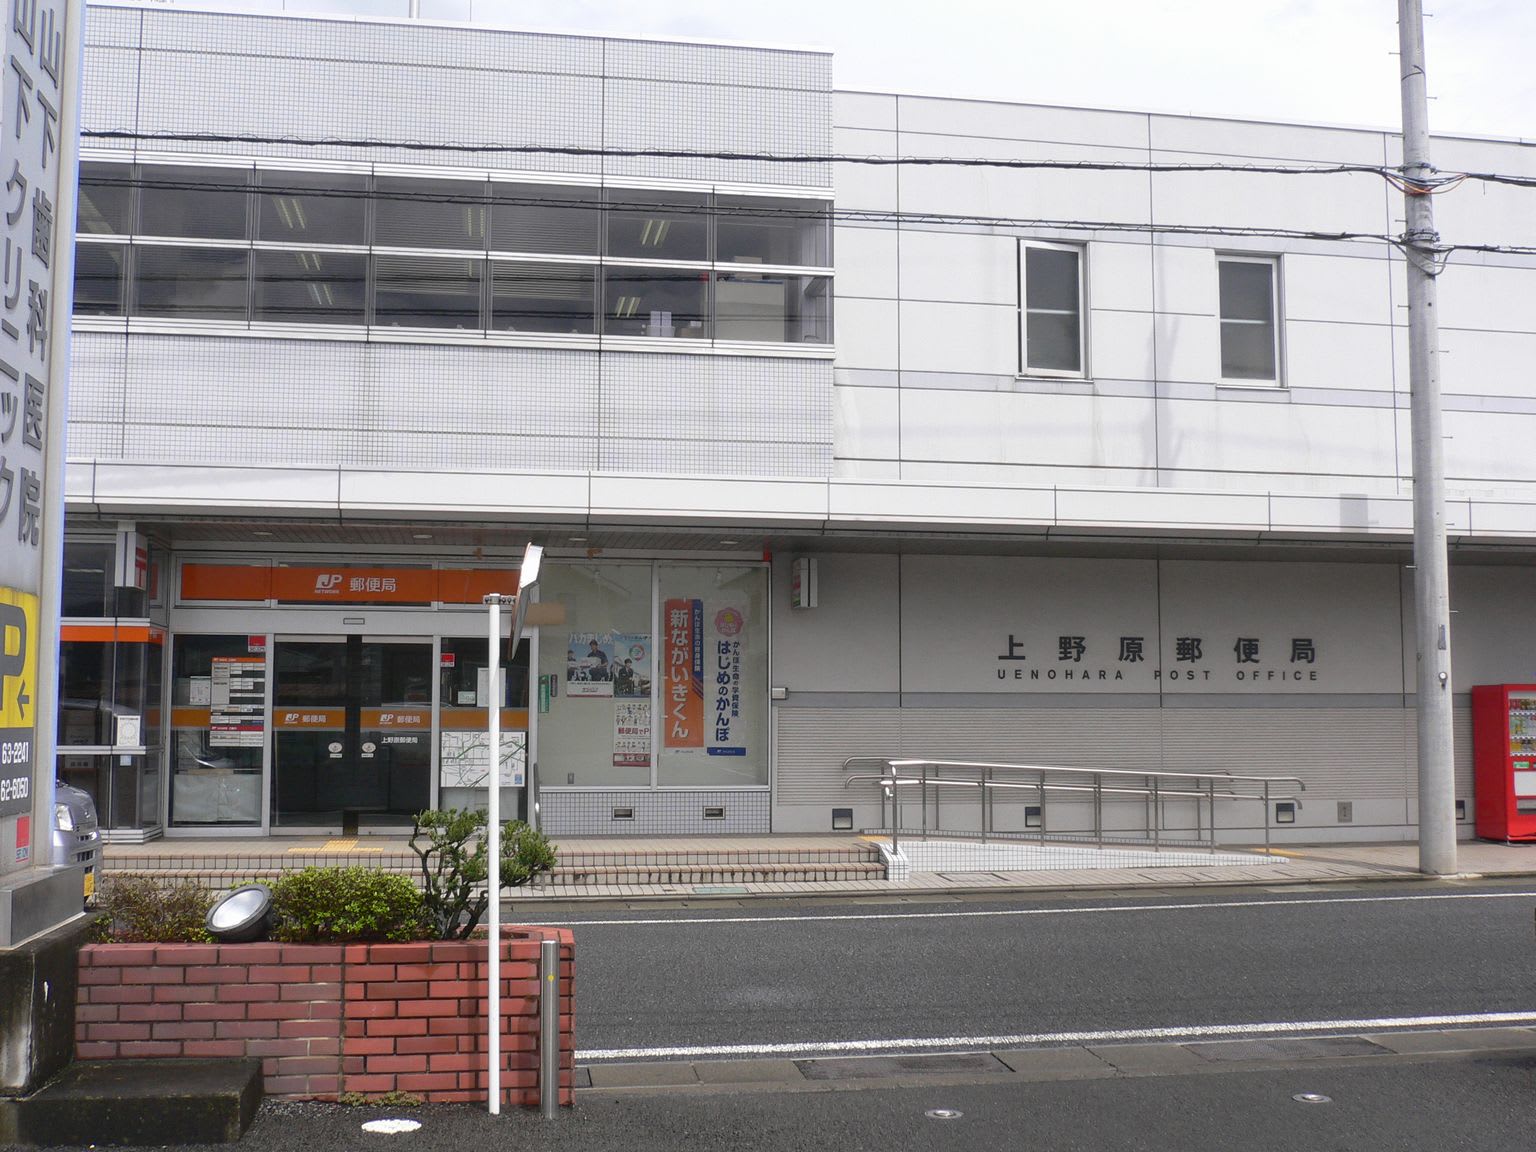 上野原郵便局の風景印 - 風景印集めと日々の散策写真日記